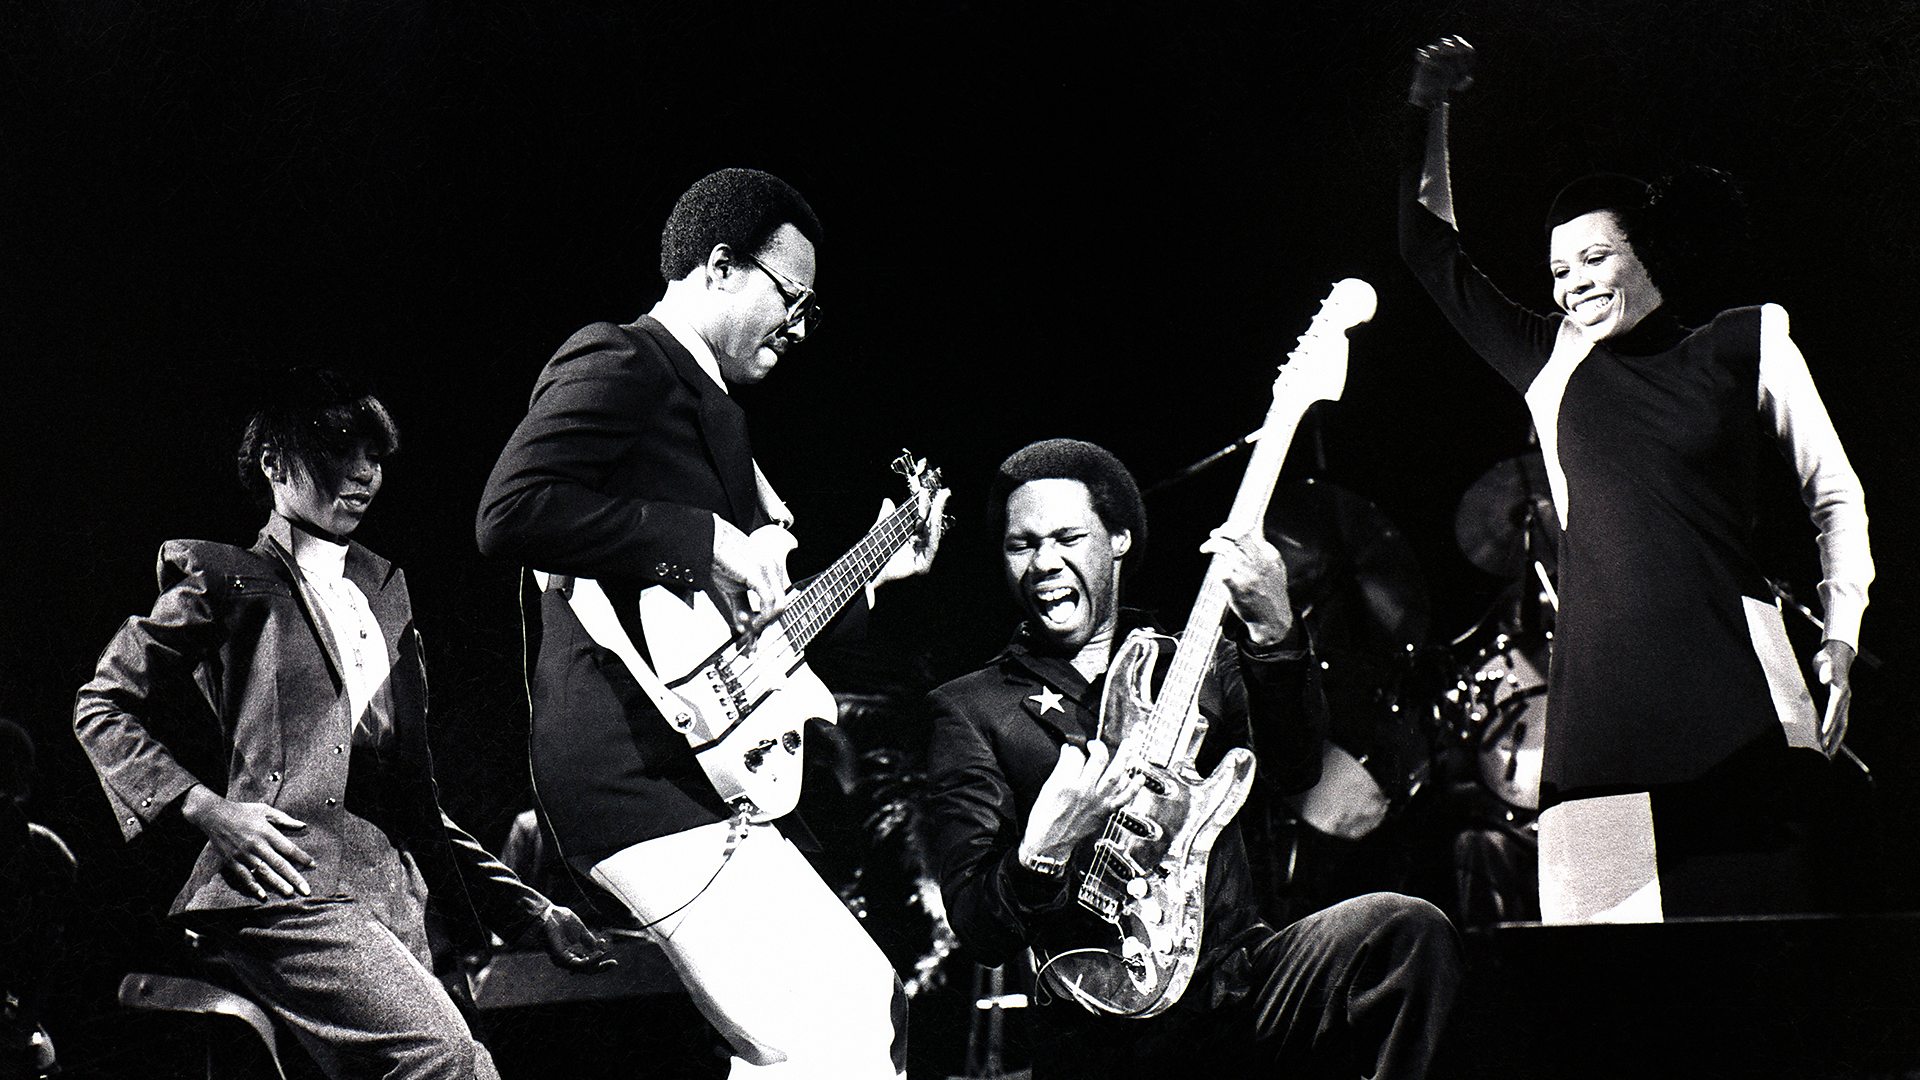 Bernard Edwards à la basse (à gauche) et Nile Rodgers à la guitare